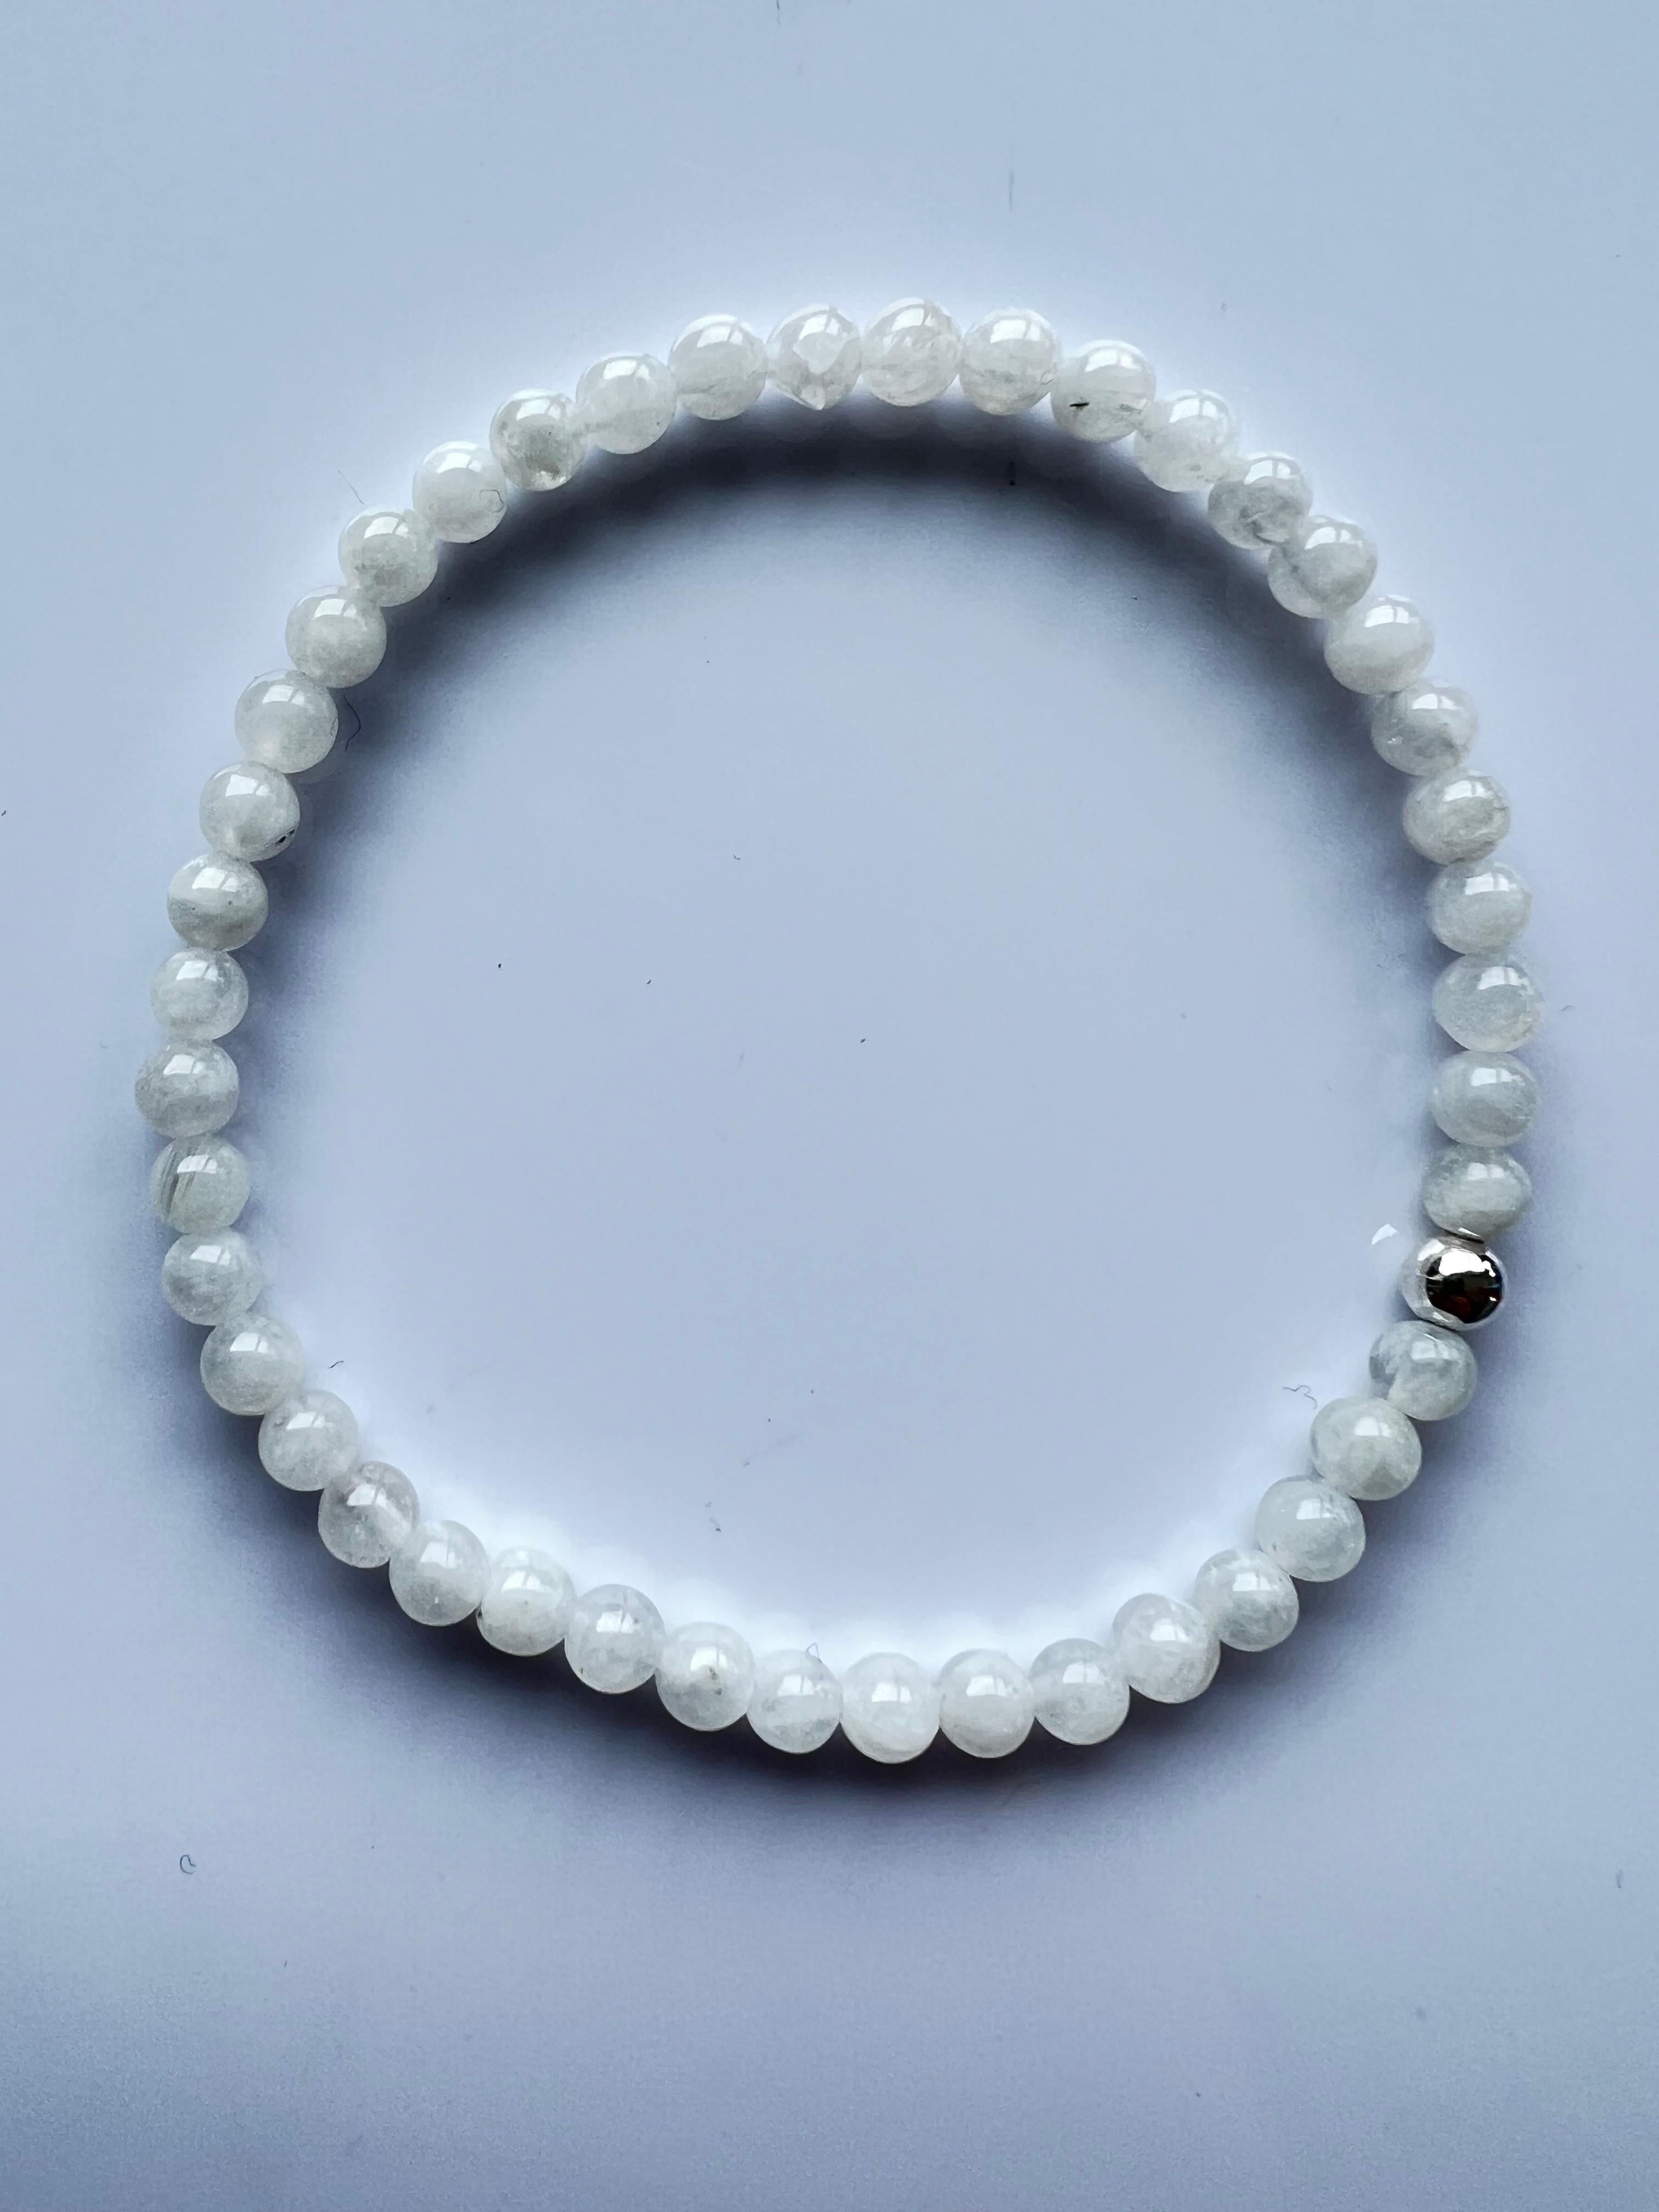 Voici le bracelet de perles en pierre de lune J Dauphin, un bijou exceptionnel émettant une aura apaisante et de profondes connotations spirituelles. Chaque bracelet est méticuleusement fabriqué à la main à Los Angeles, insufflant les puissantes